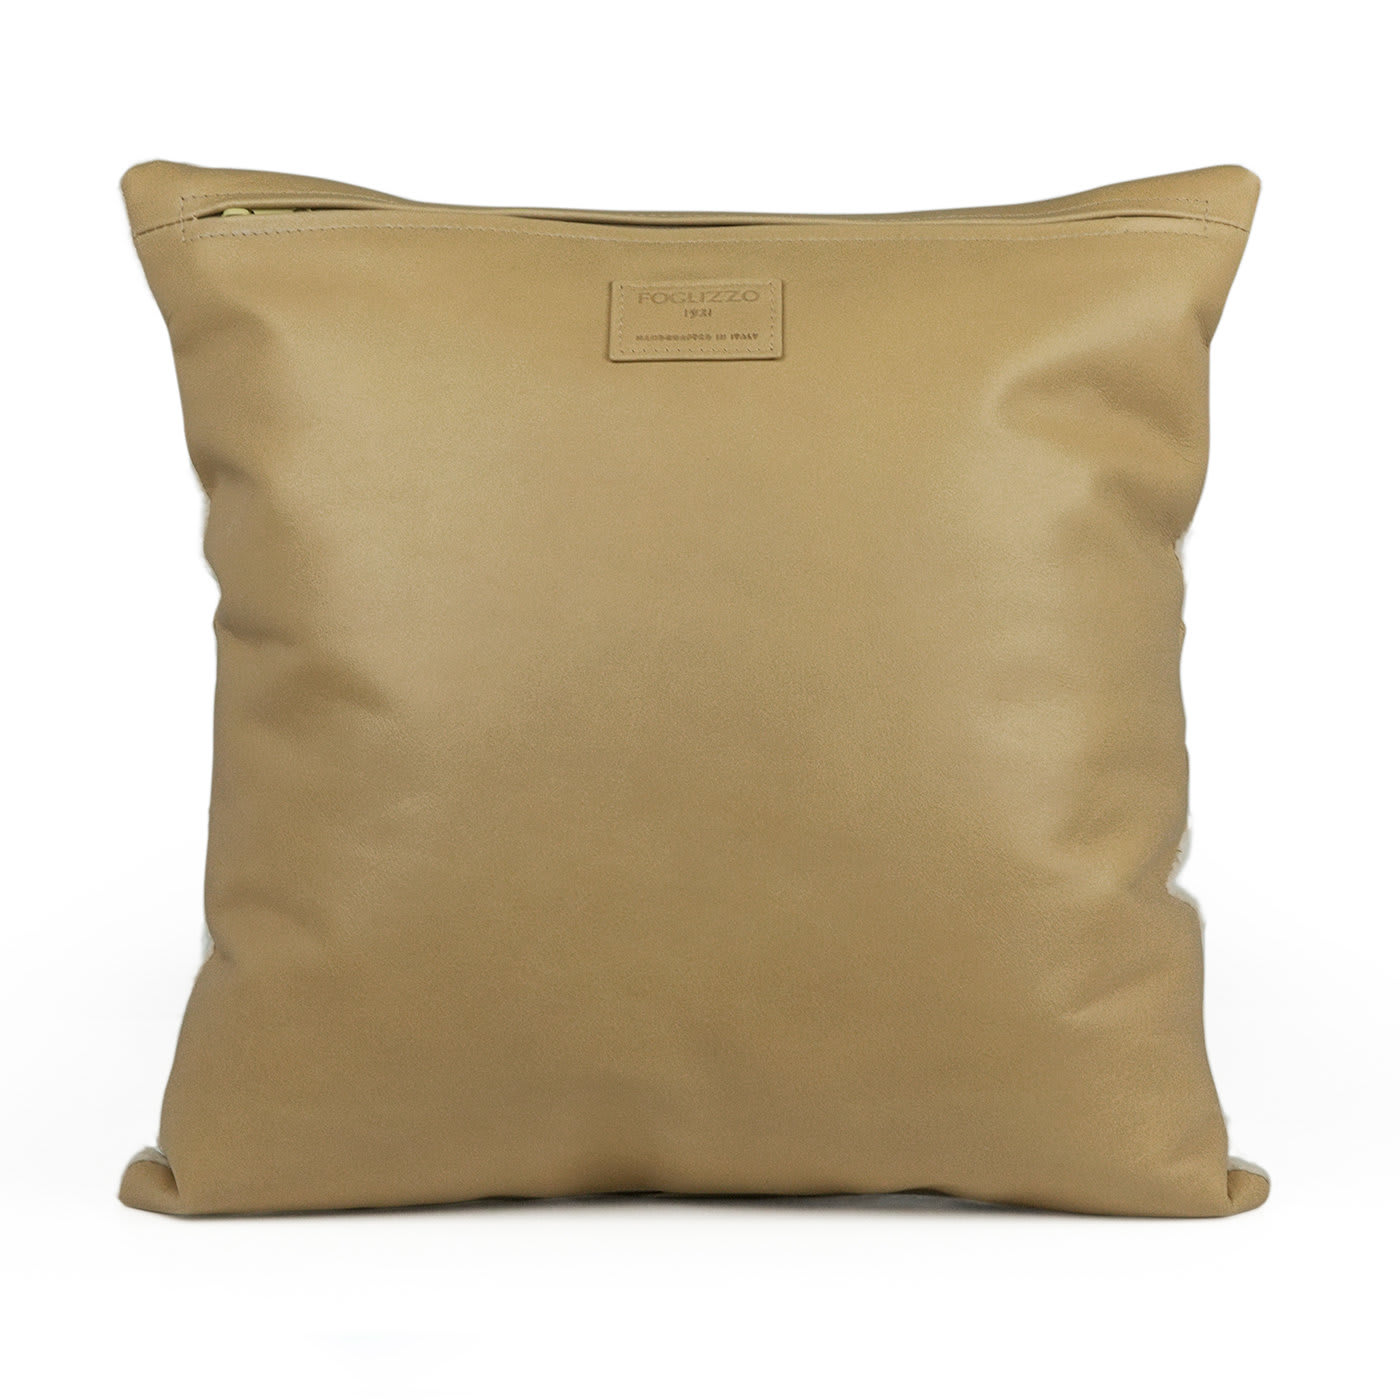 Domus Cushions Cashmere #1 - Foglizzo 1921